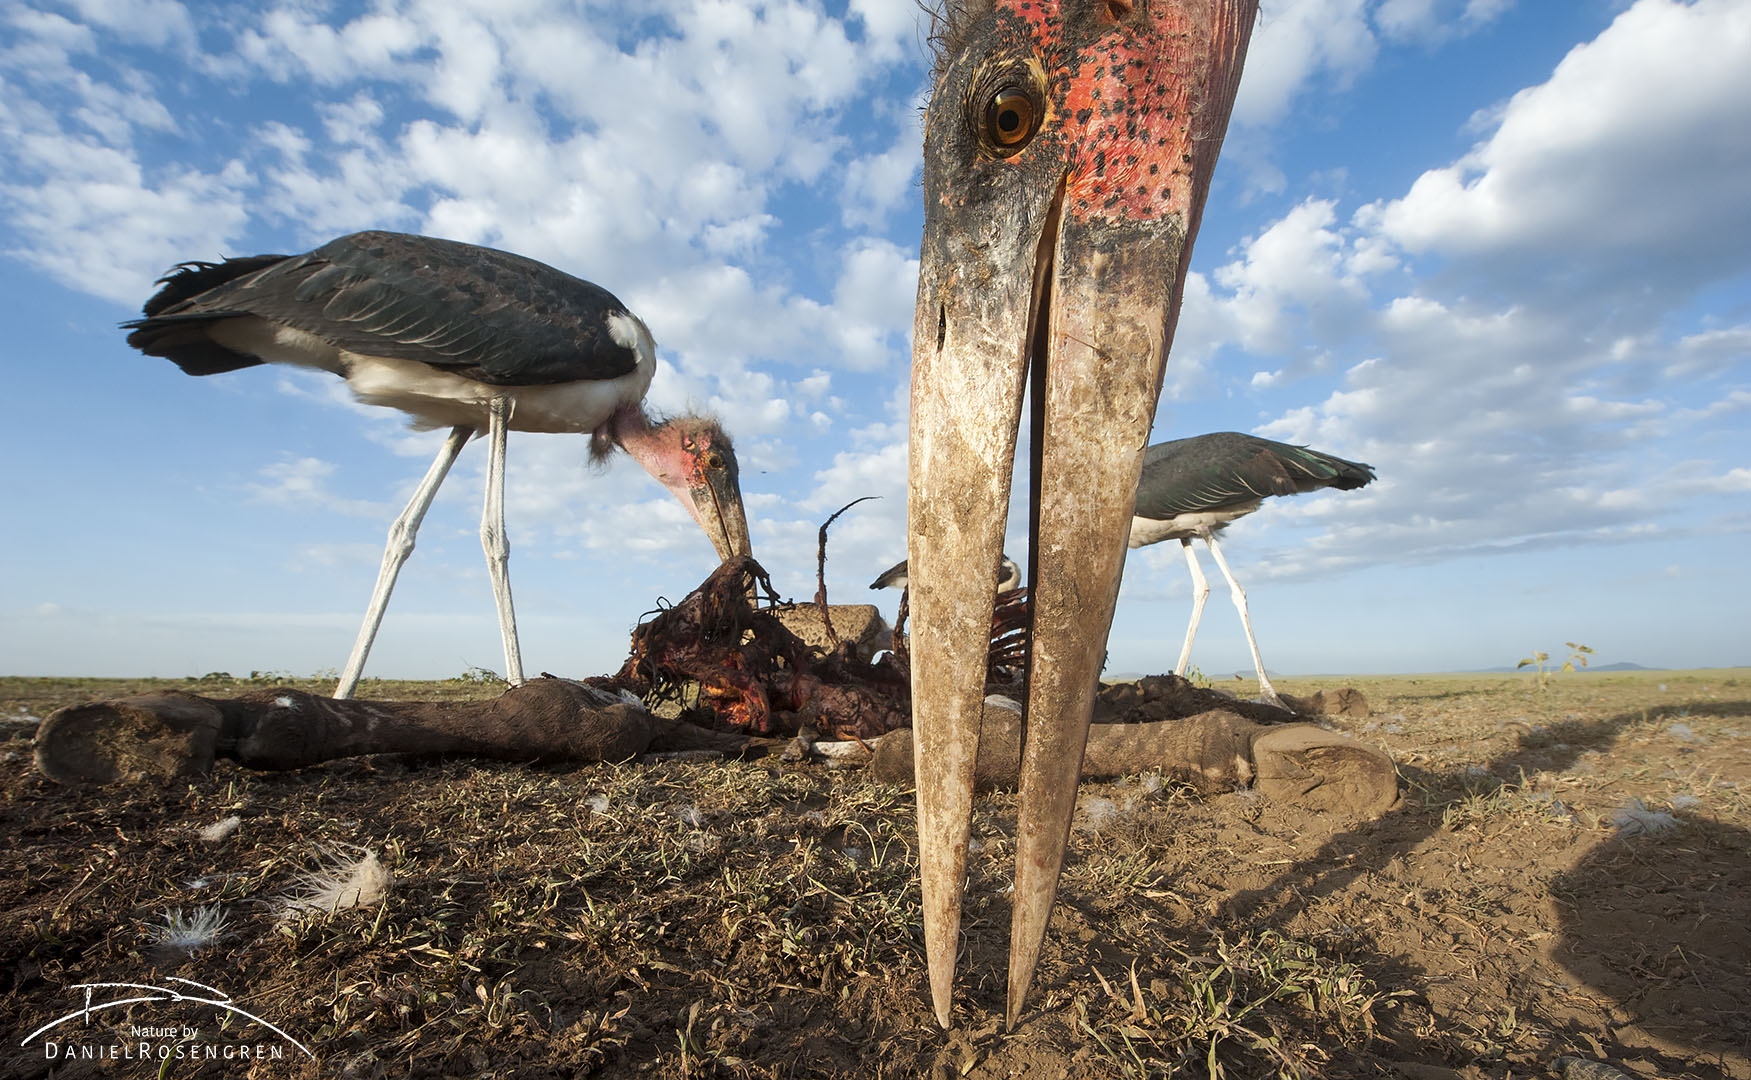 The dagger like beak of a Marabou stork. © Daniel Rosengren